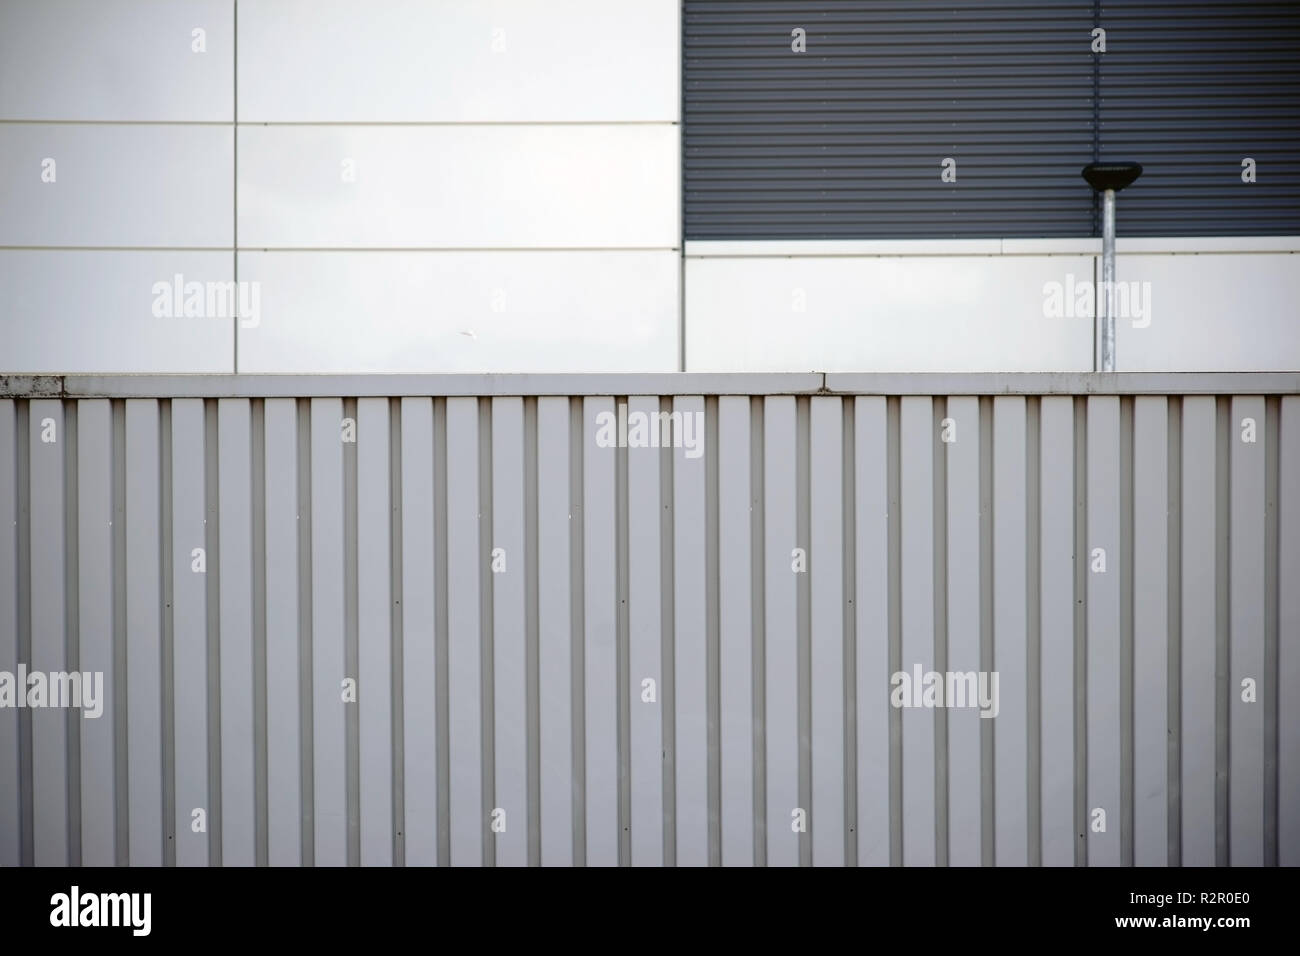 https://c8.alamy.com/compes/r2r0e0/barrera-de-insonorizacion-hechas-de-acero-corrugado-una-pared-exterior-revetted-moderno-con-paneles-de-metal-en-el-fondo-r2r0e0.jpg